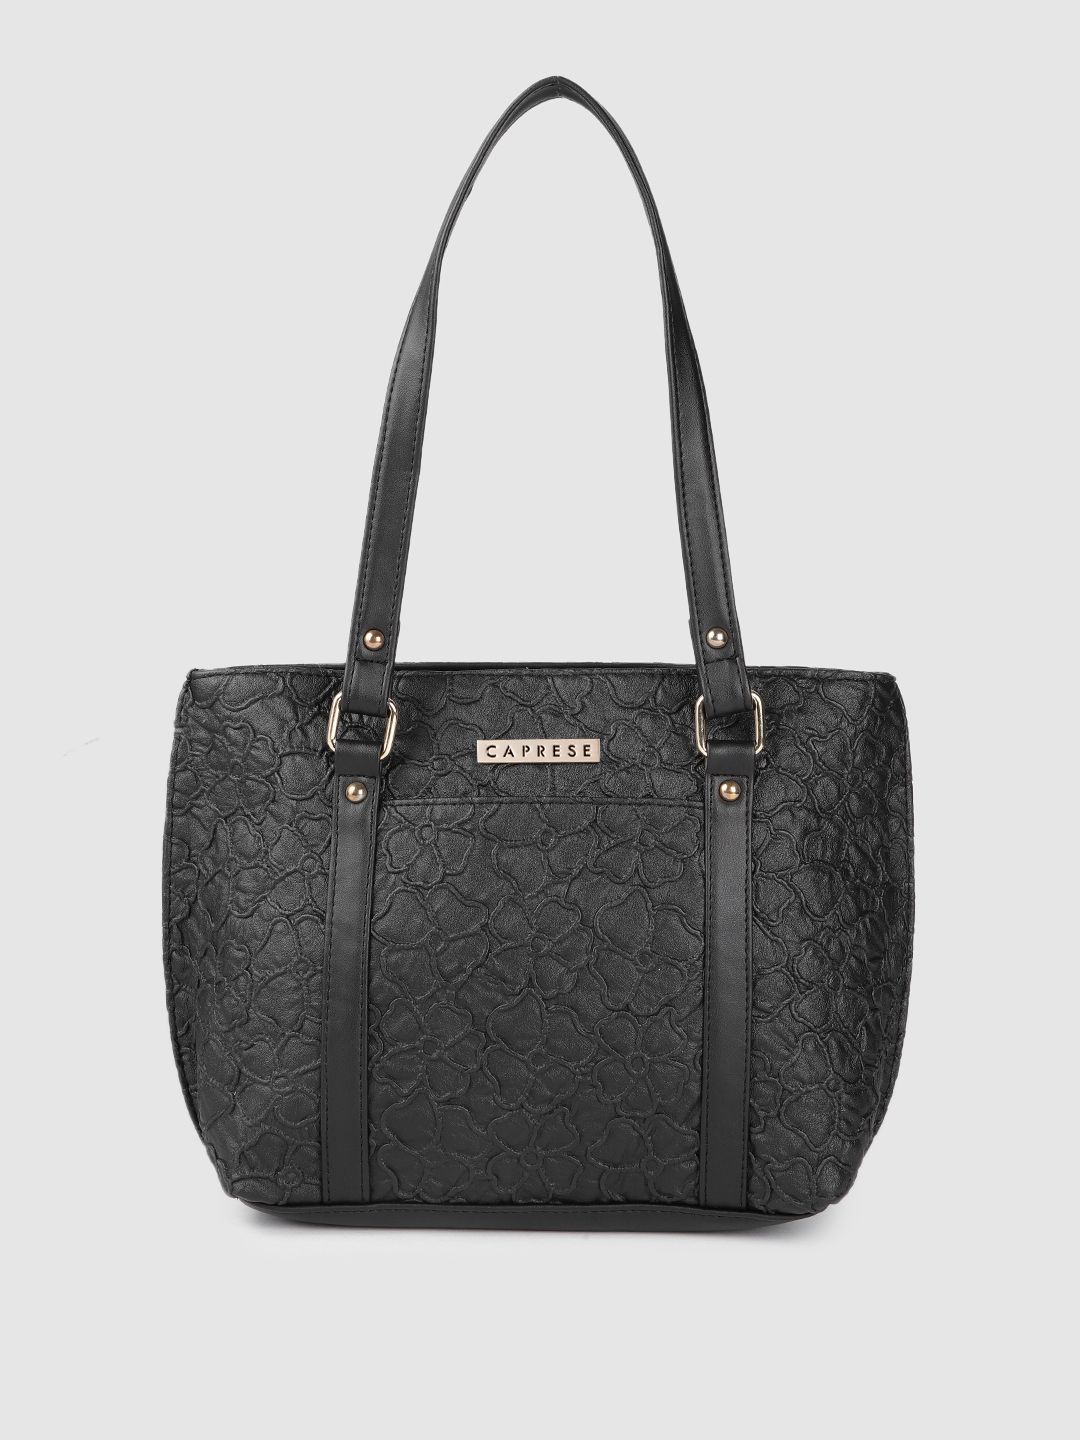 Caprese Black Floral Design Leather Shoulder Bag Price in India